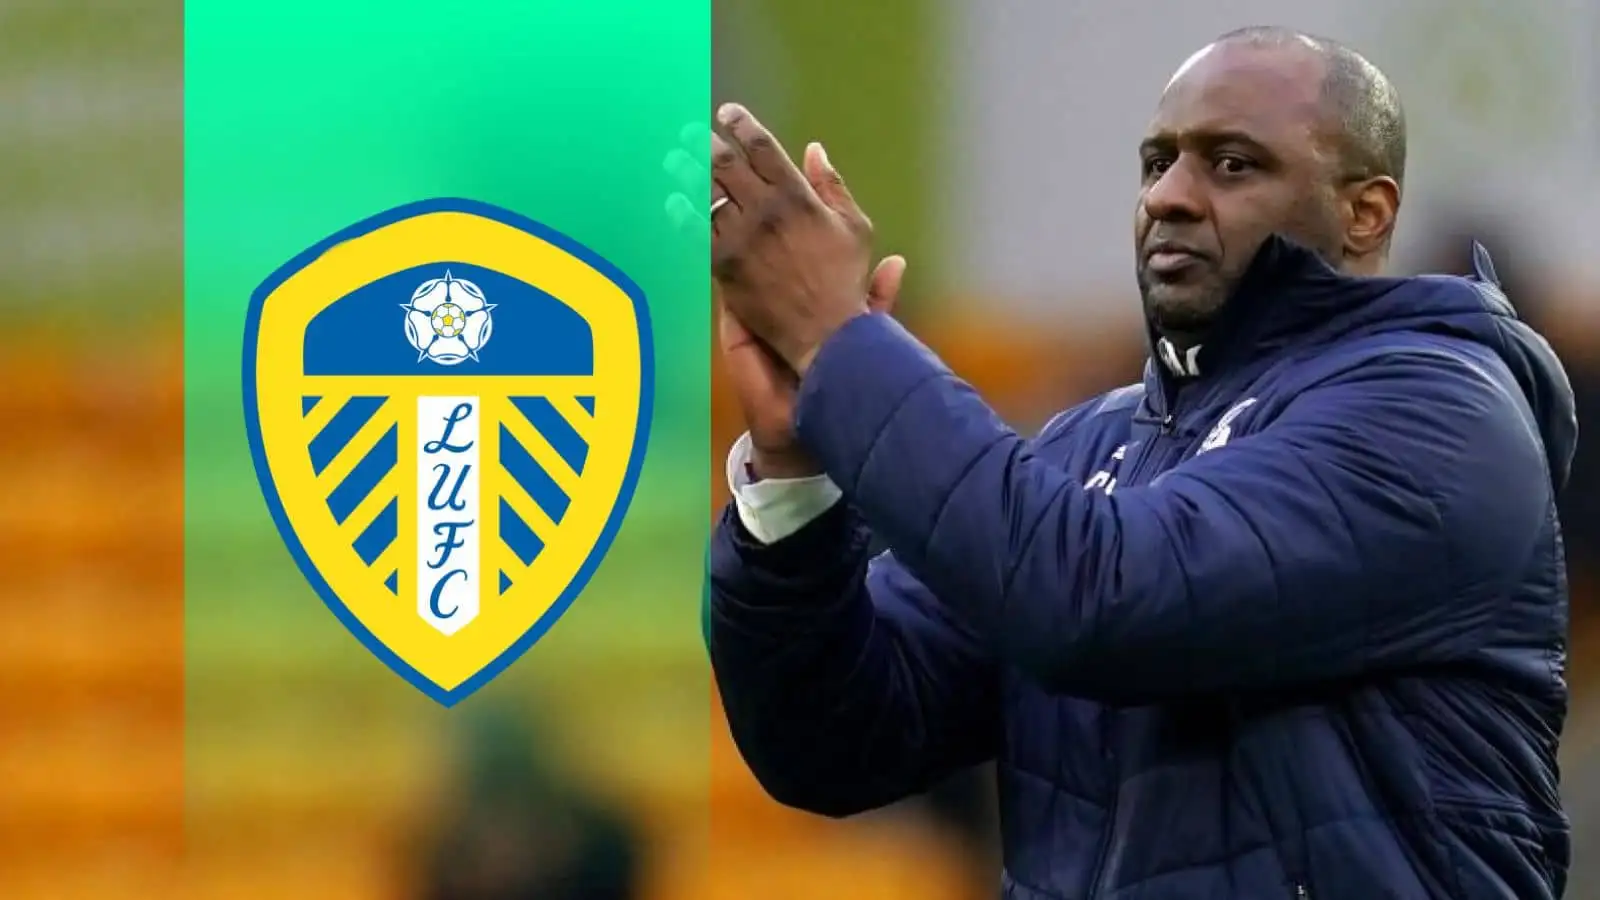 Next Leeds manager -Patrick Vieira a contender